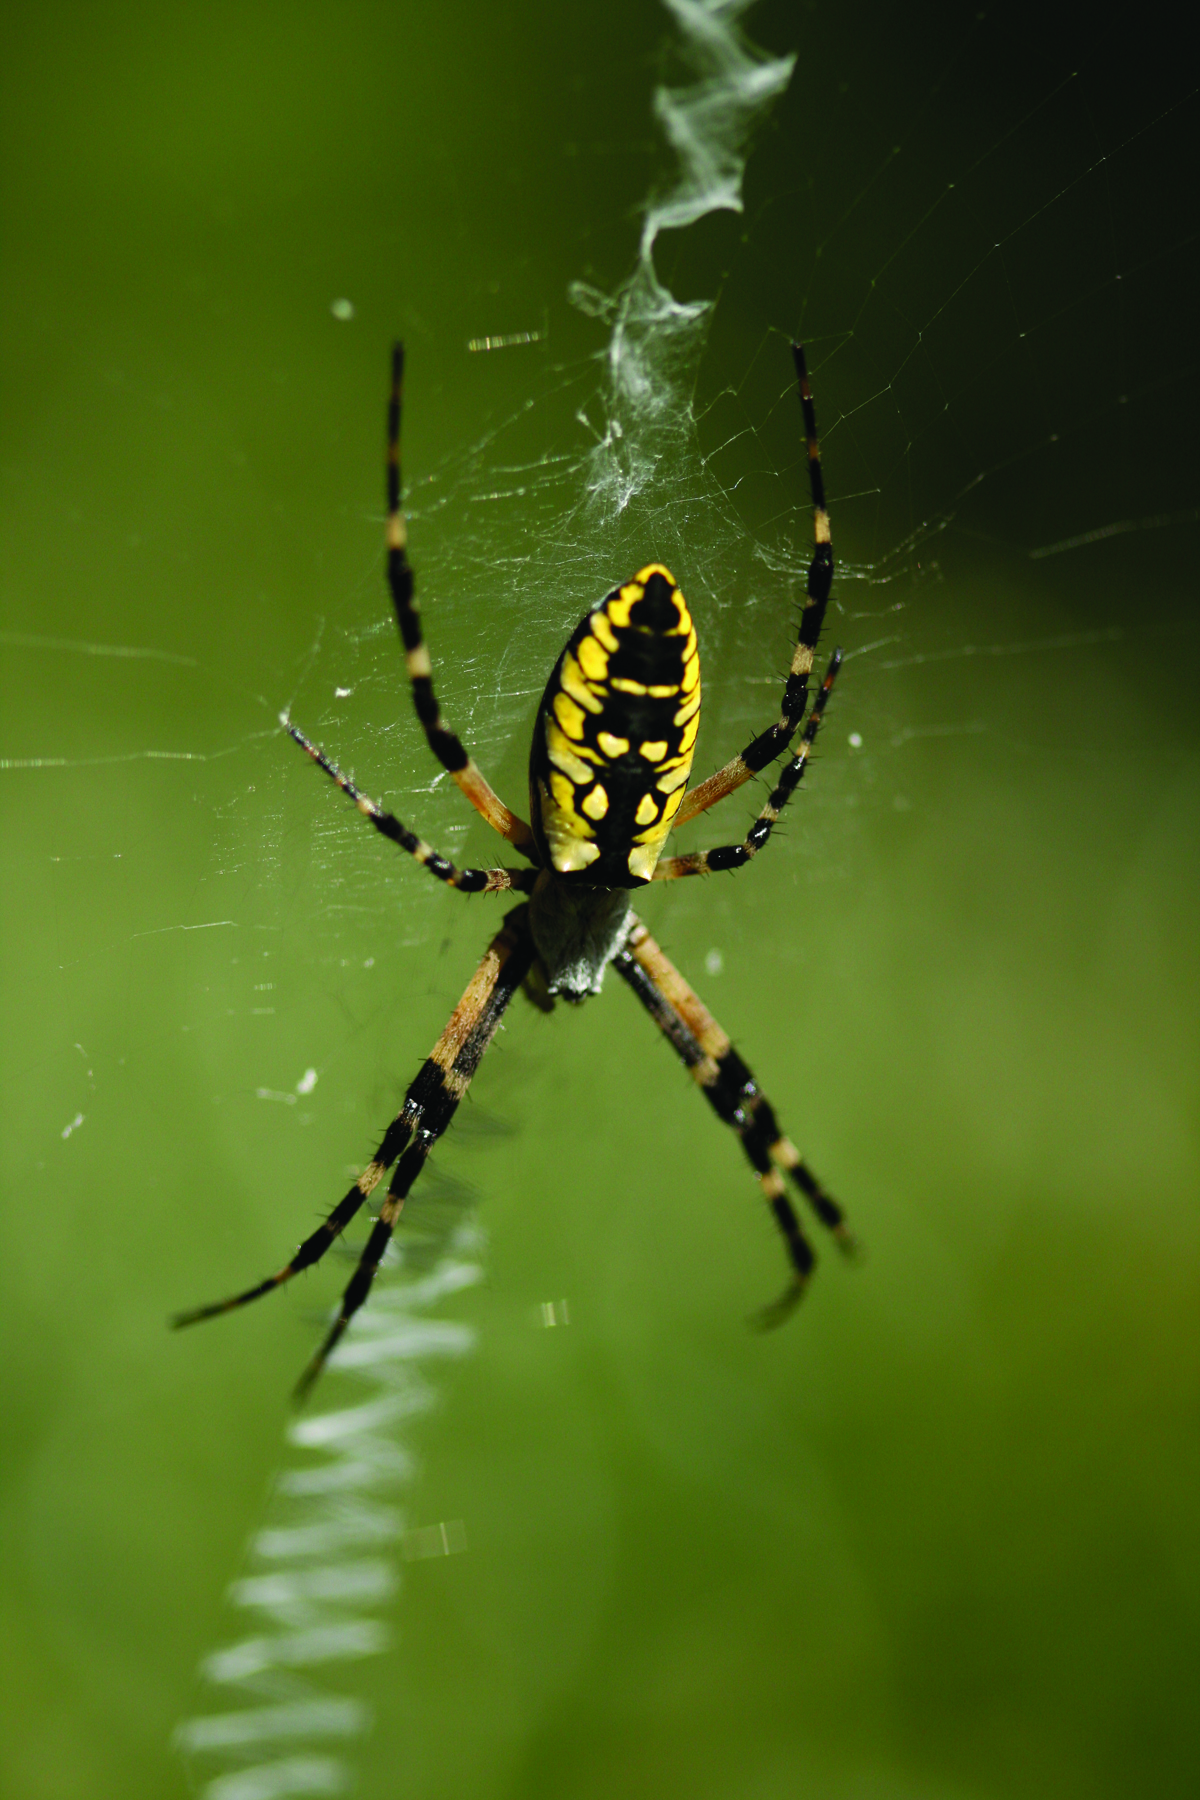 Garden Spider Facts & Control: Get Rid of Garden Spiders